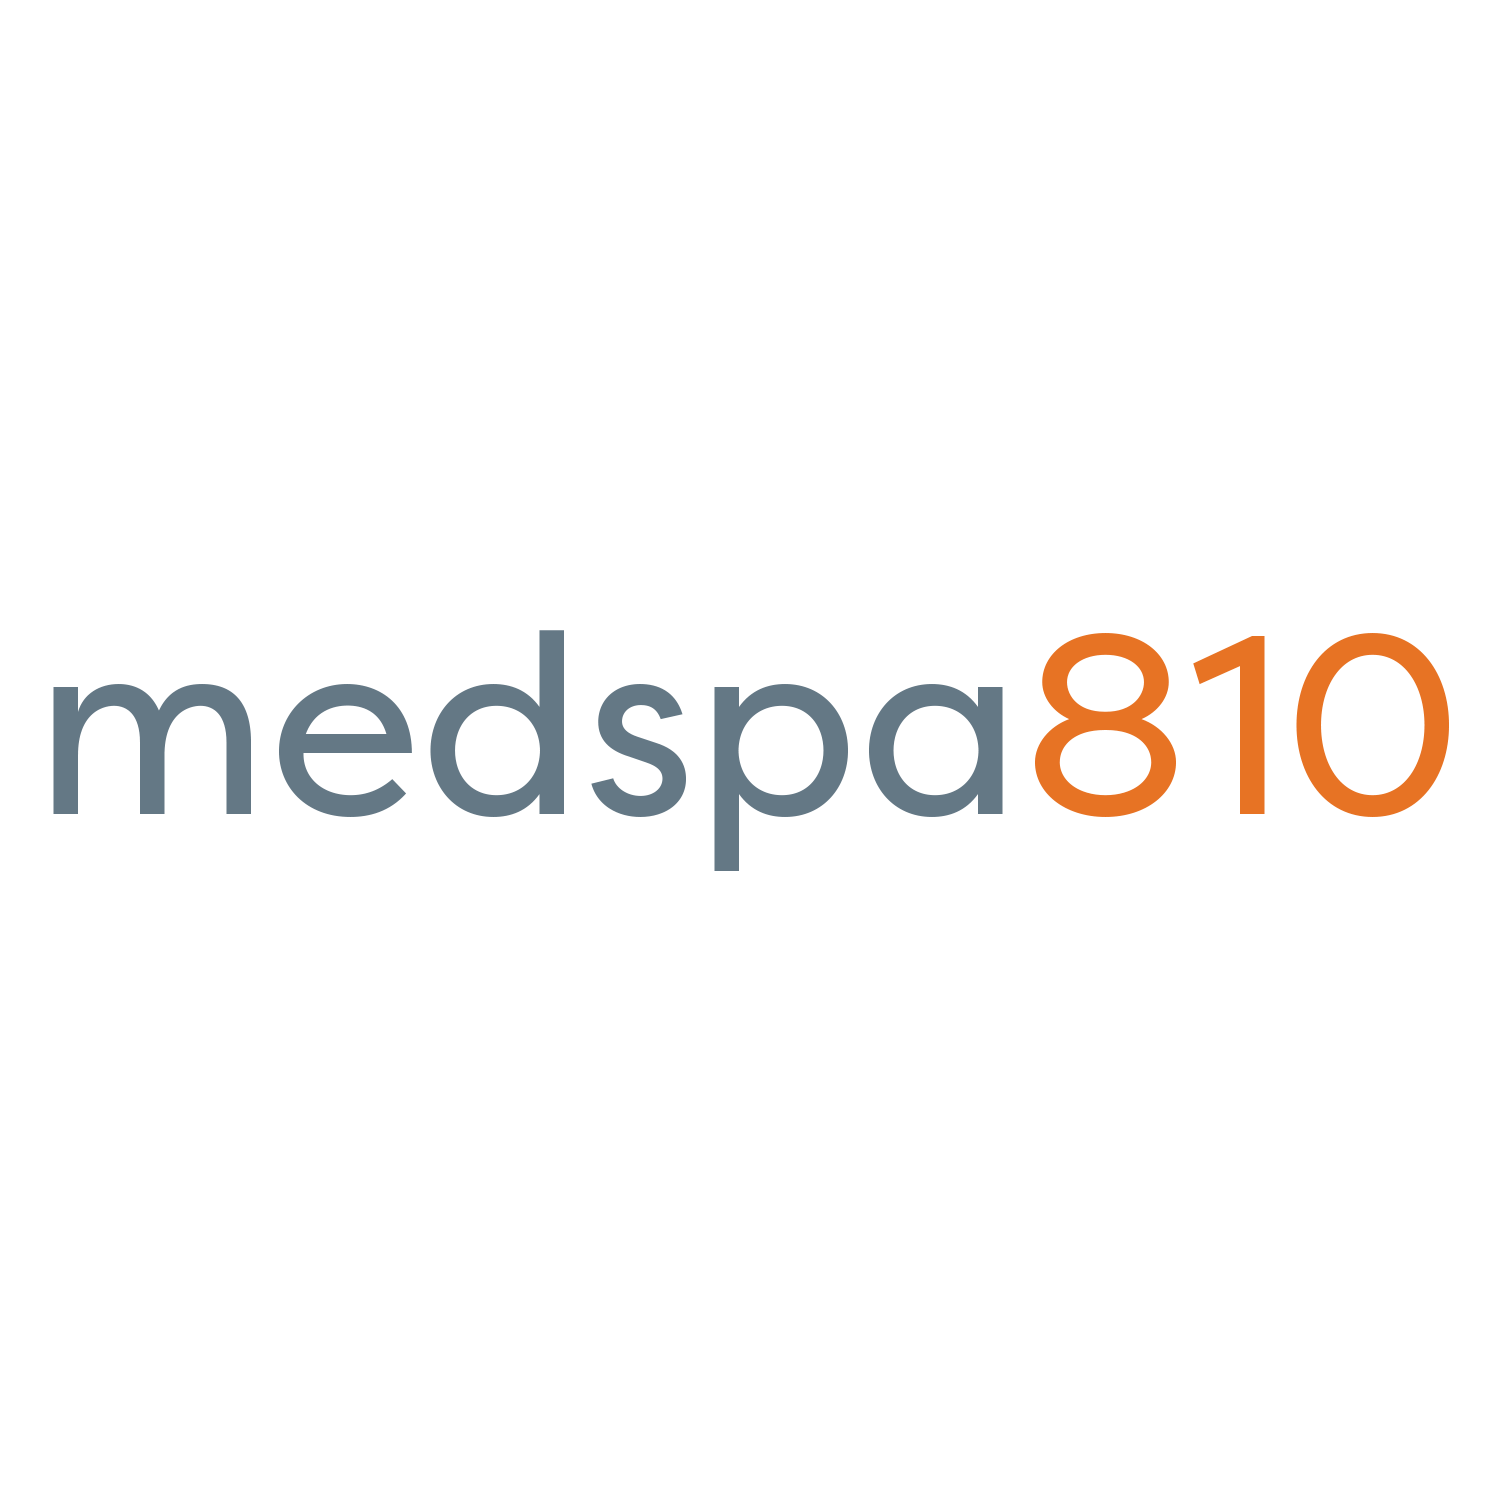 MedSpa logo